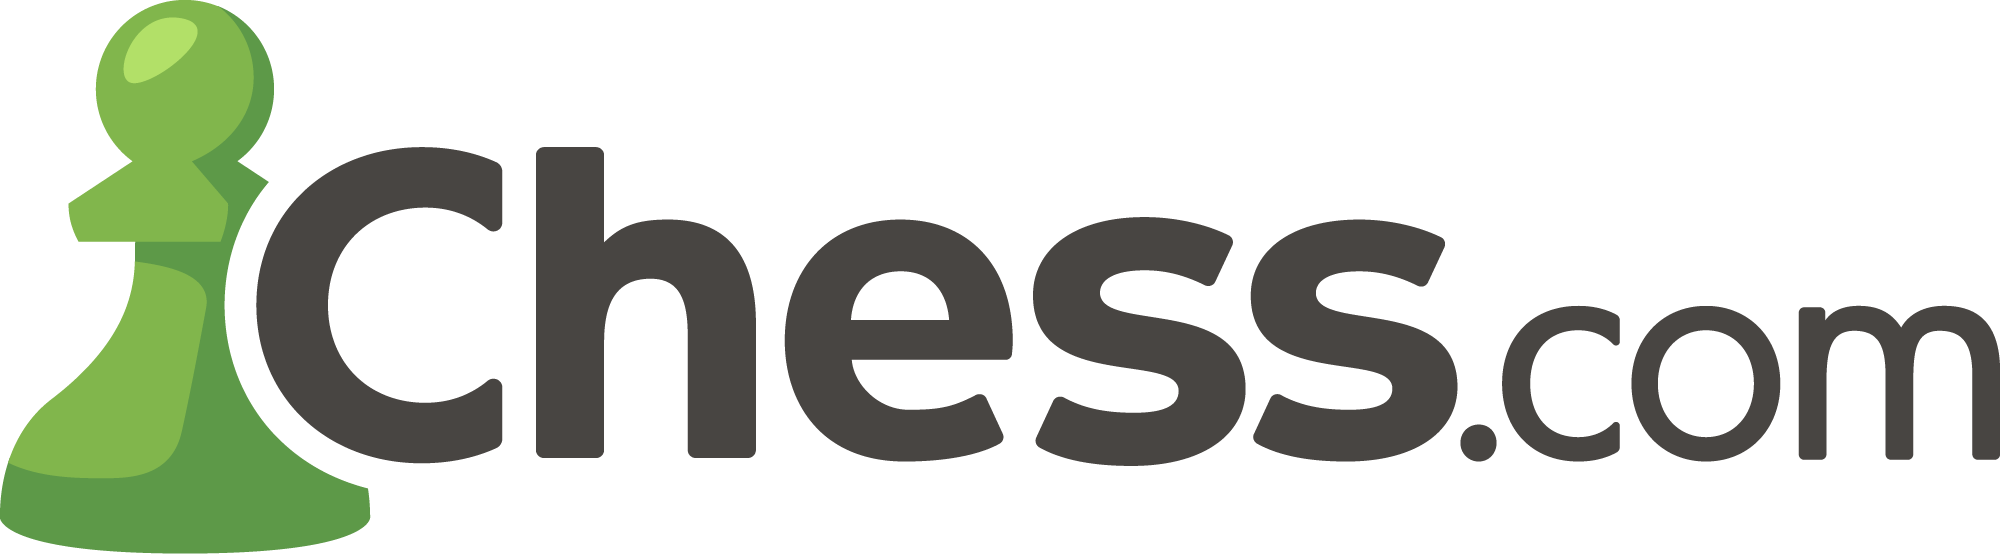 Чесском ру. Chess.com логотип. Шахматы Chess.com. Логотип Чесс ком. Чесском логотип.